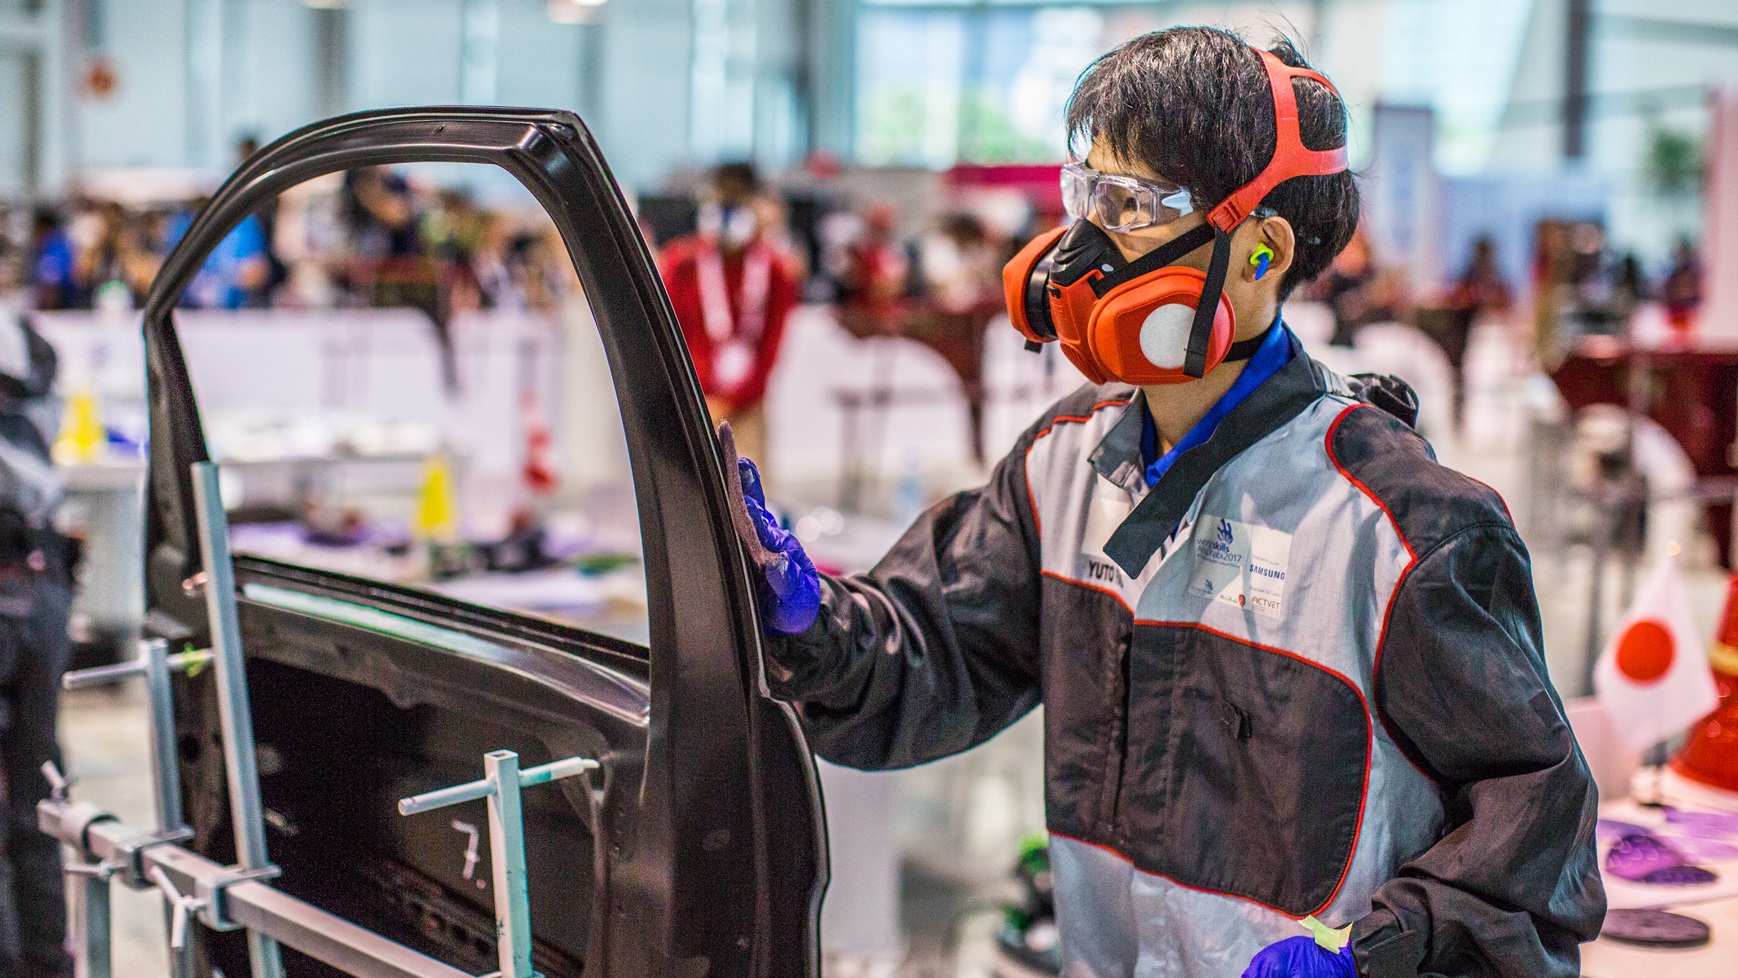 BASF setzt globale Partnerschaft mit WorldSkills fort, um neue Talente in der Autolackierbranche zu fördern